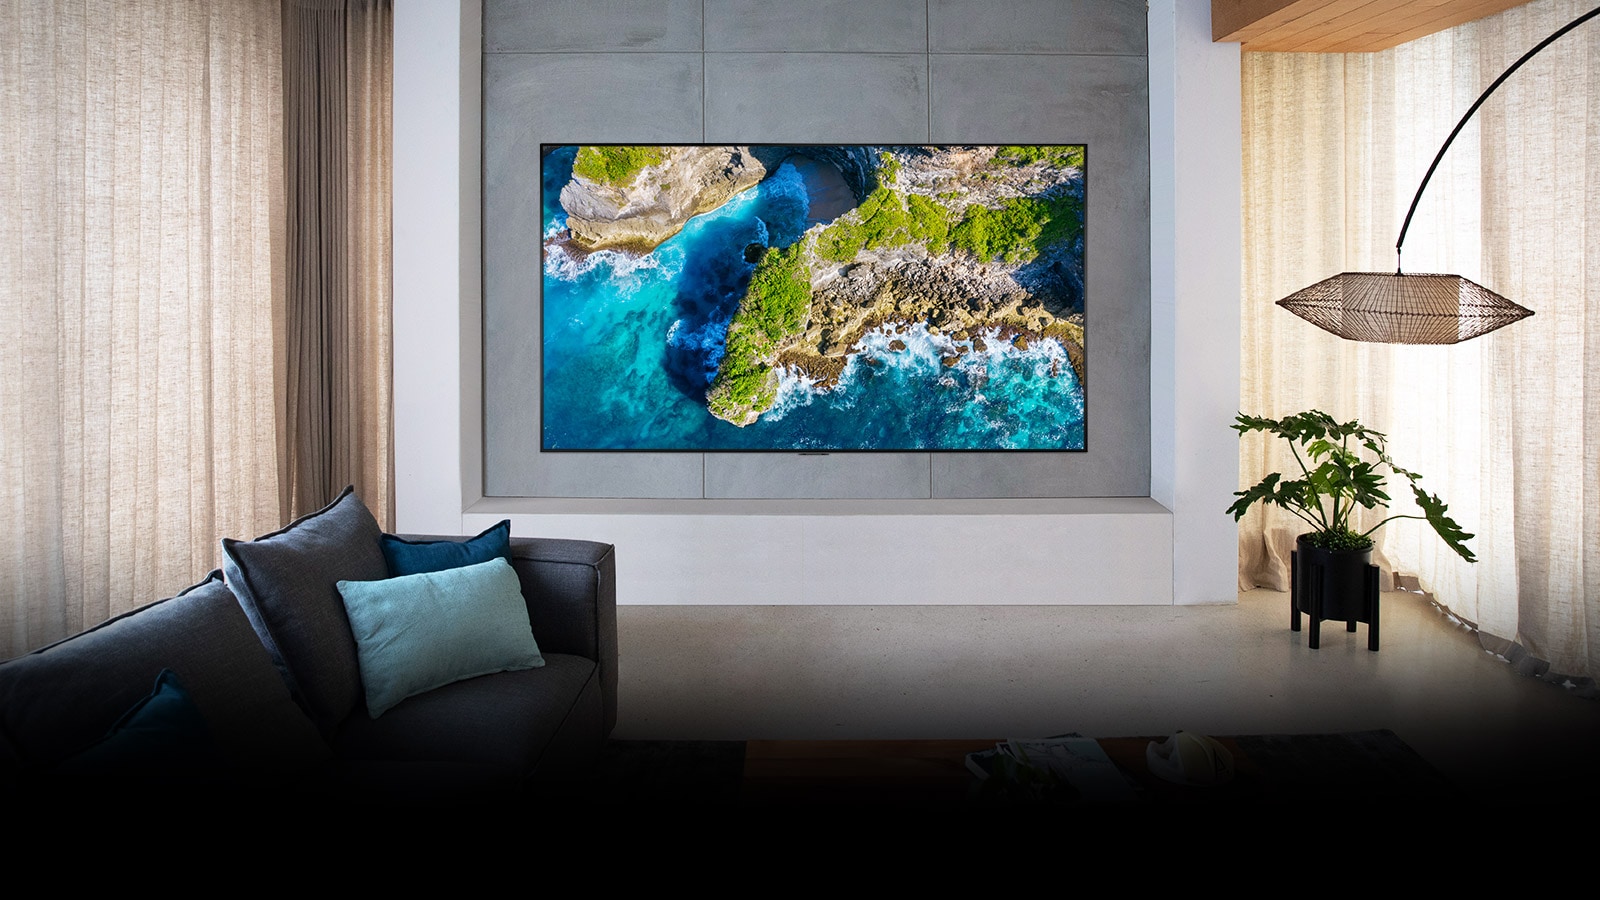 TV que muestra una vista aérea de la naturaleza en un ámbito hogareño lujoso